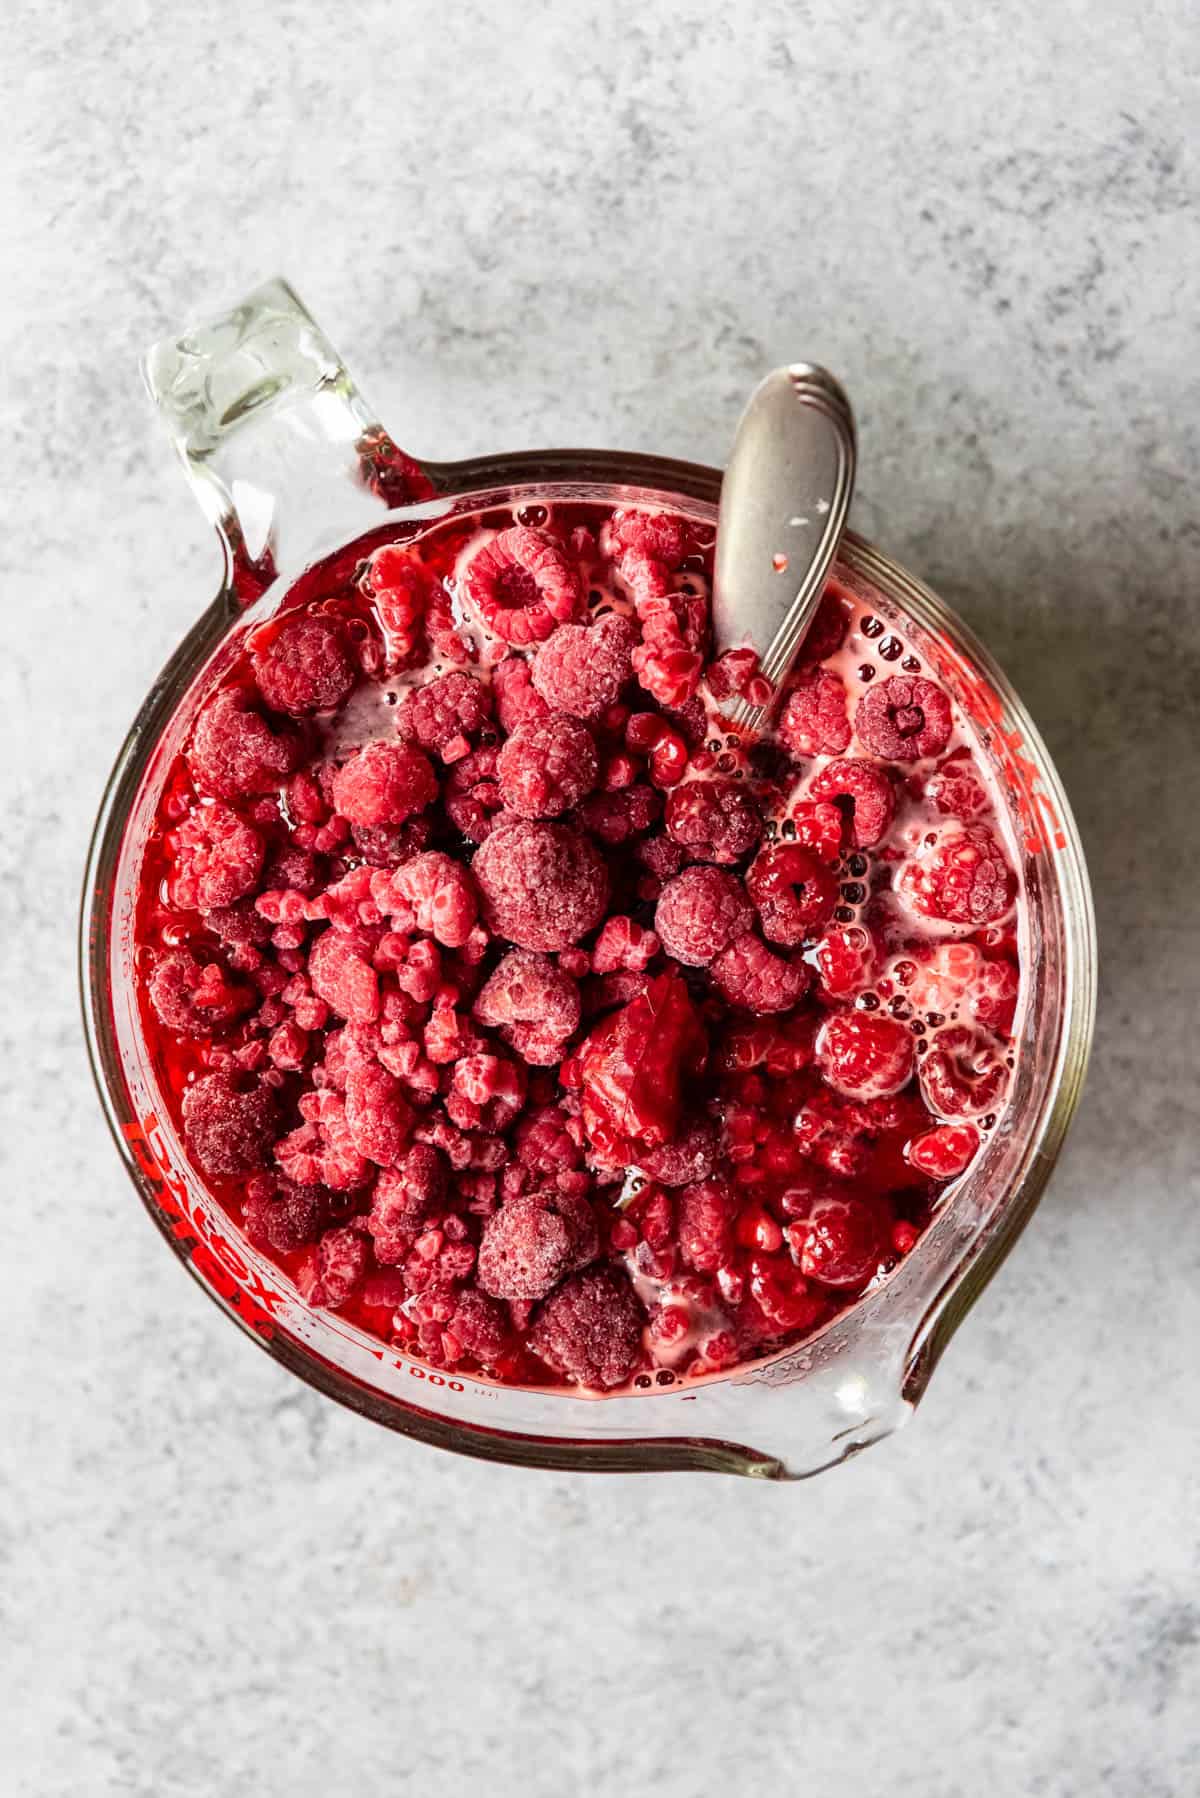 An image of frozen raspberries in jello.